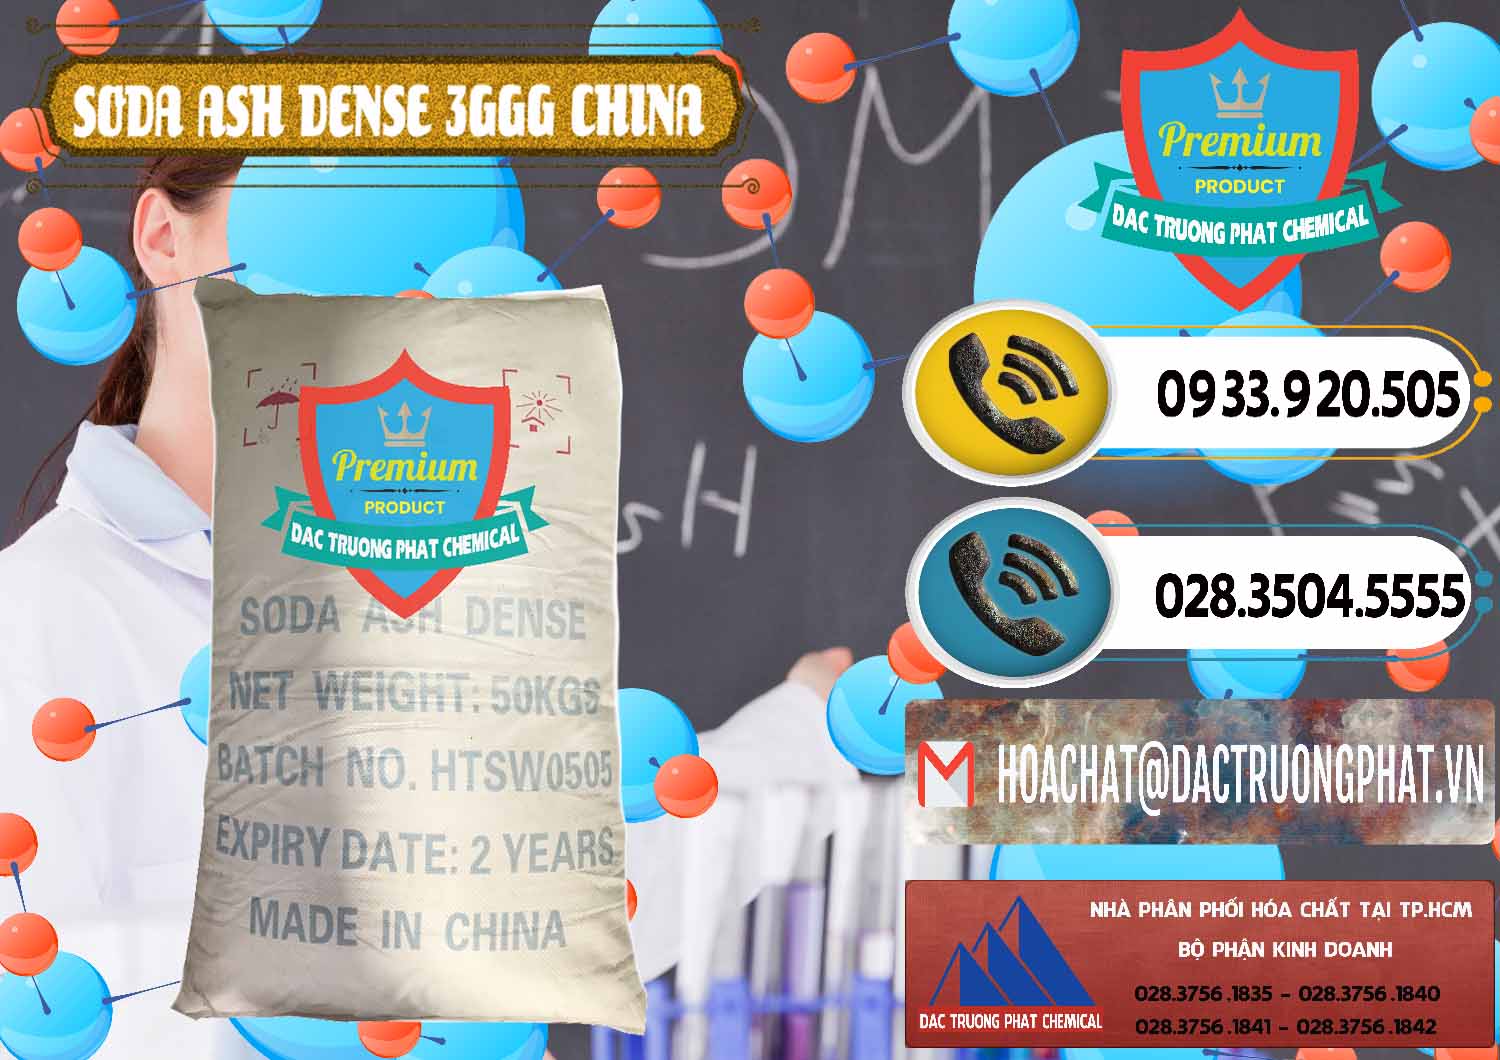 Nhập khẩu & bán Soda Ash Dense - NA2CO3 3GGG Trung Quốc China - 0335 - Nơi phân phối _ cung cấp hóa chất tại TP.HCM - hoachatdetnhuom.vn